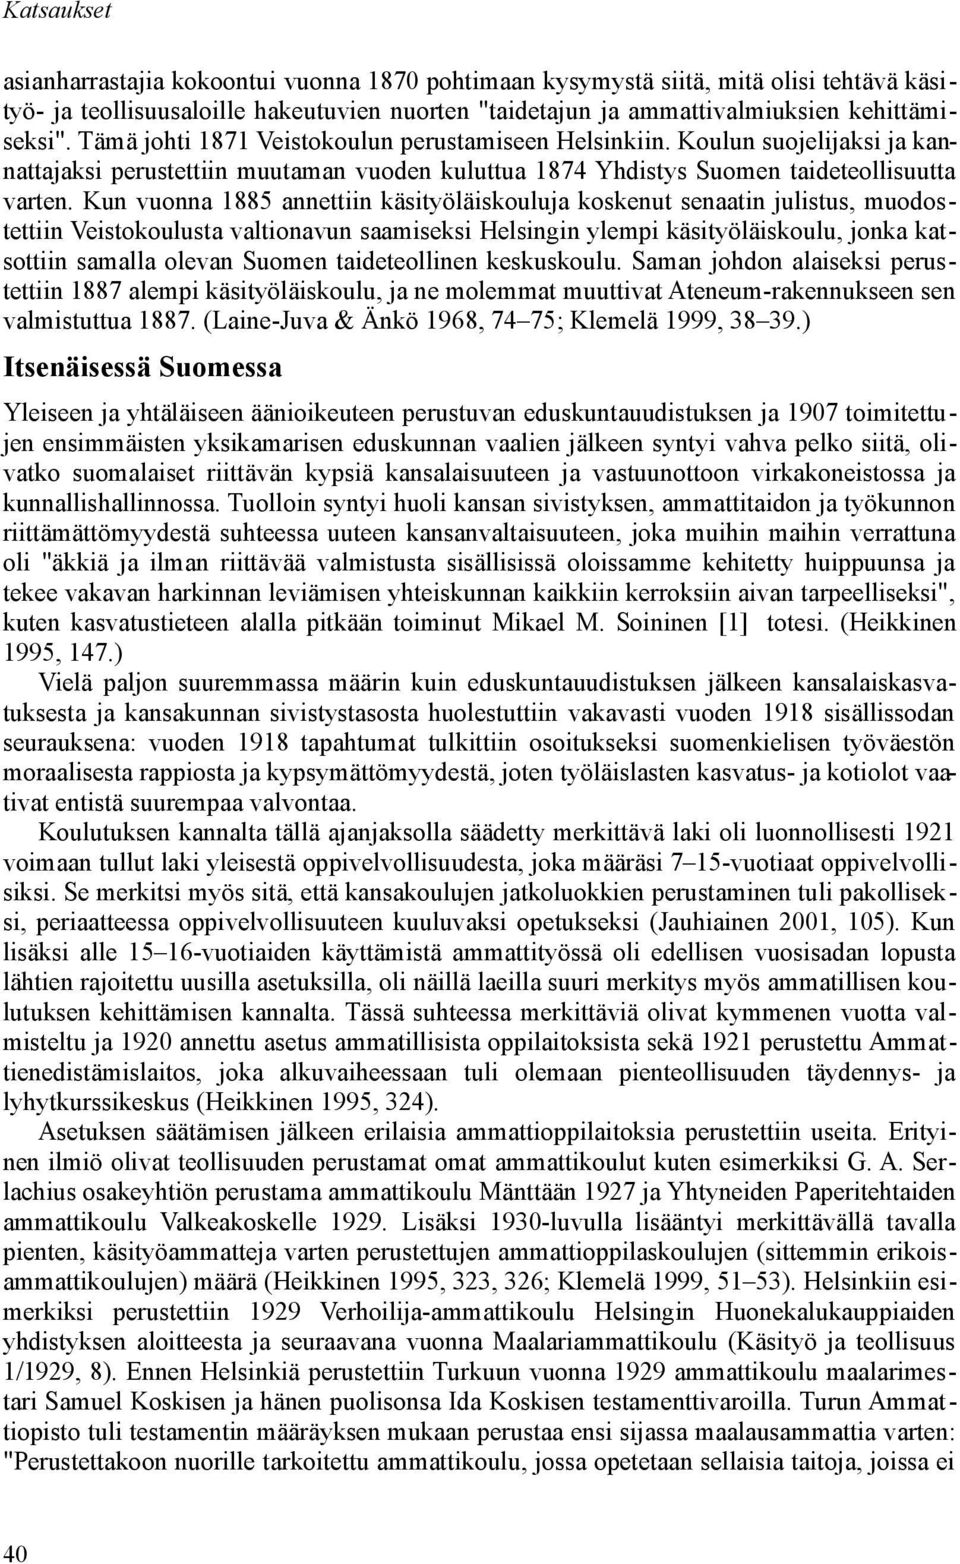 Kun vuonna 1885 annettiin käsityöläiskouluja koskenut senaatin julistus, muodostettiin Veistokoulusta valtionavun saamiseksi Helsingin ylempi käsityöläiskoulu, jonka katsottiin samalla olevan Suomen